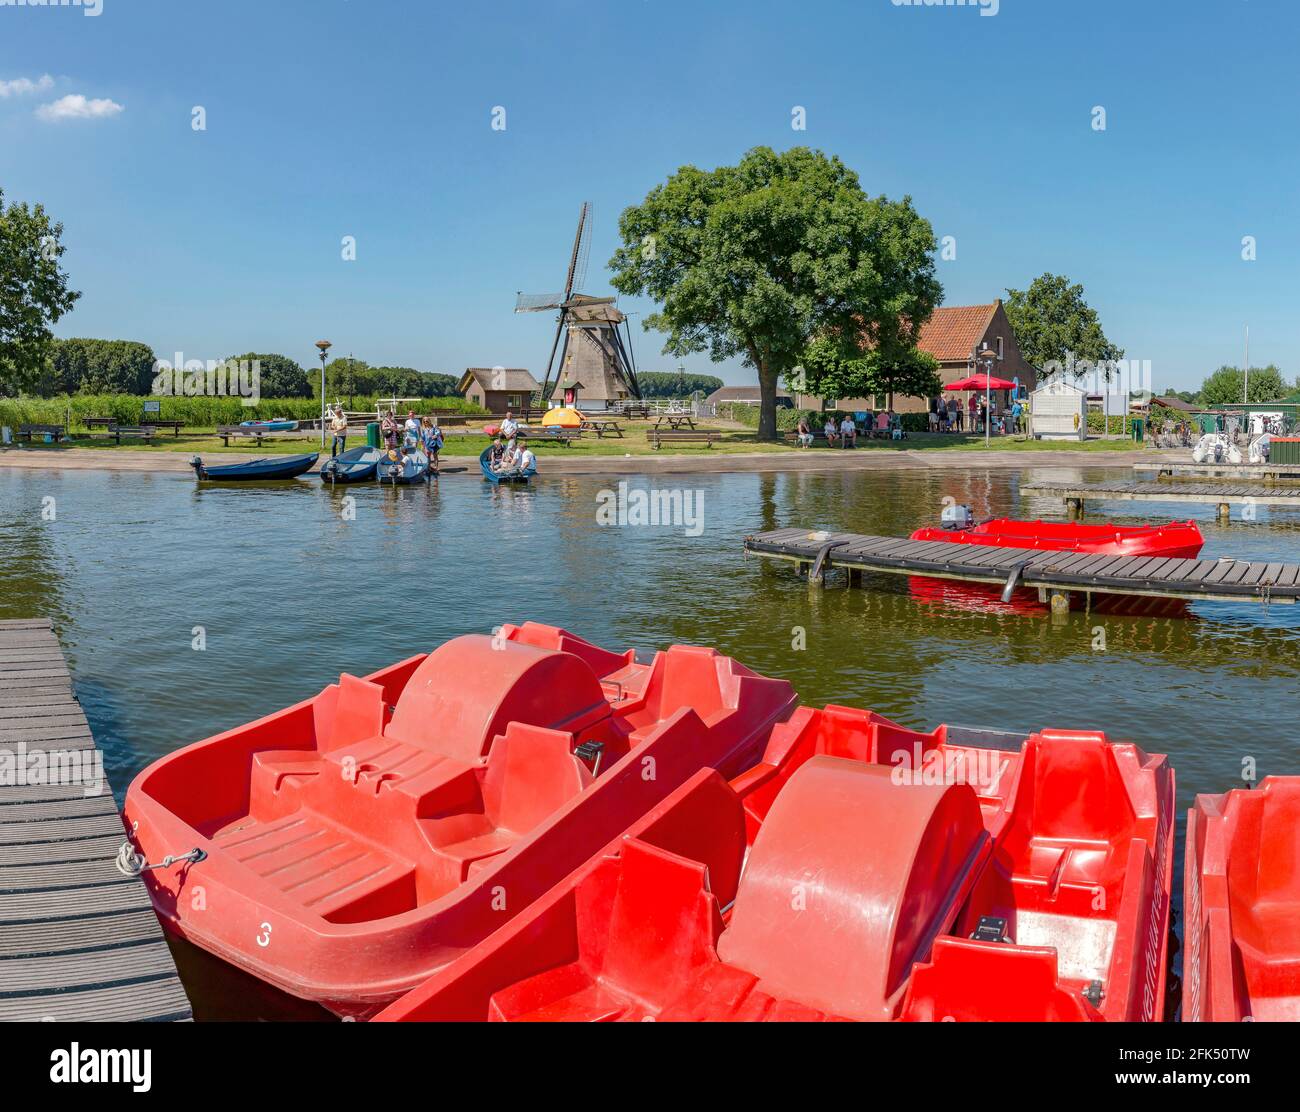 Moulin de Drainige appelé Eendrachtsmolen et location de bateaux près du lac Rotte Meren *** Légende locale *** Zevenhuizen, Zuid-Holland, pays-Bas, Winwm Banque D'Images